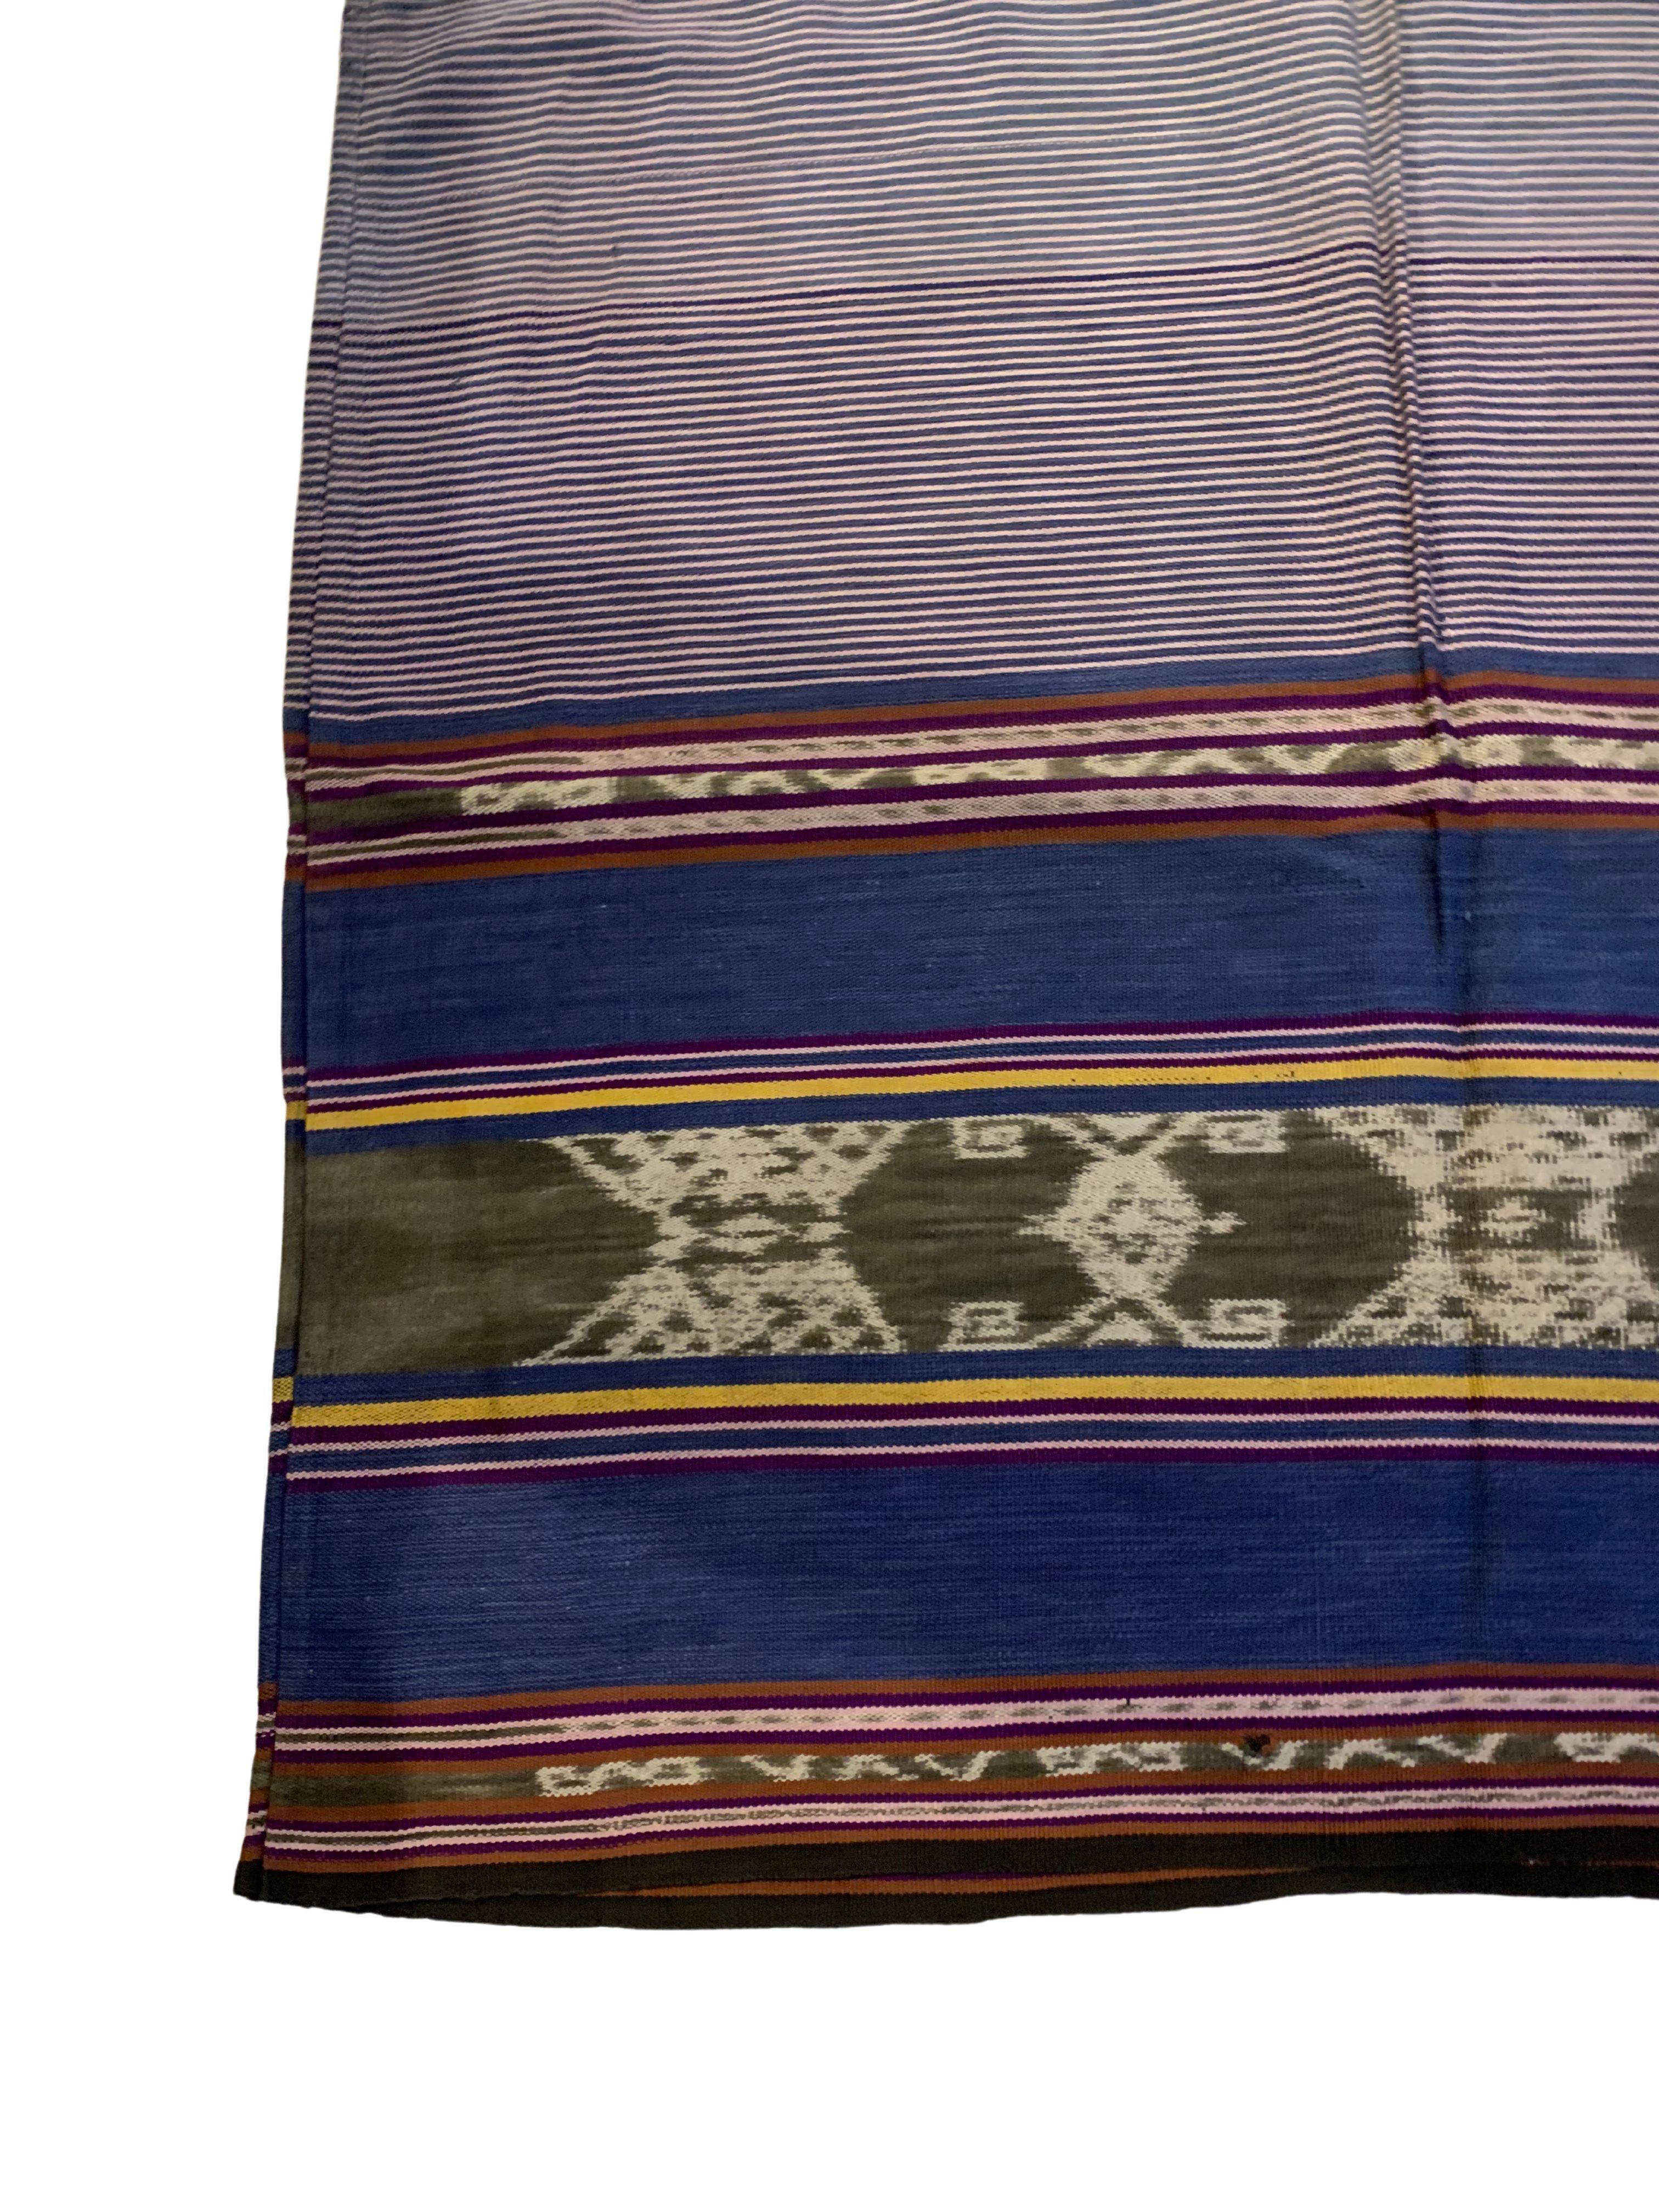 Dieses Ikat-Textil stammt von der Insel Timor in Indonesien. Es wird mit natürlich gefärbten Garnen nach einer seit Generationen überlieferten Methode handgewebt. Dieses Textil ist als 